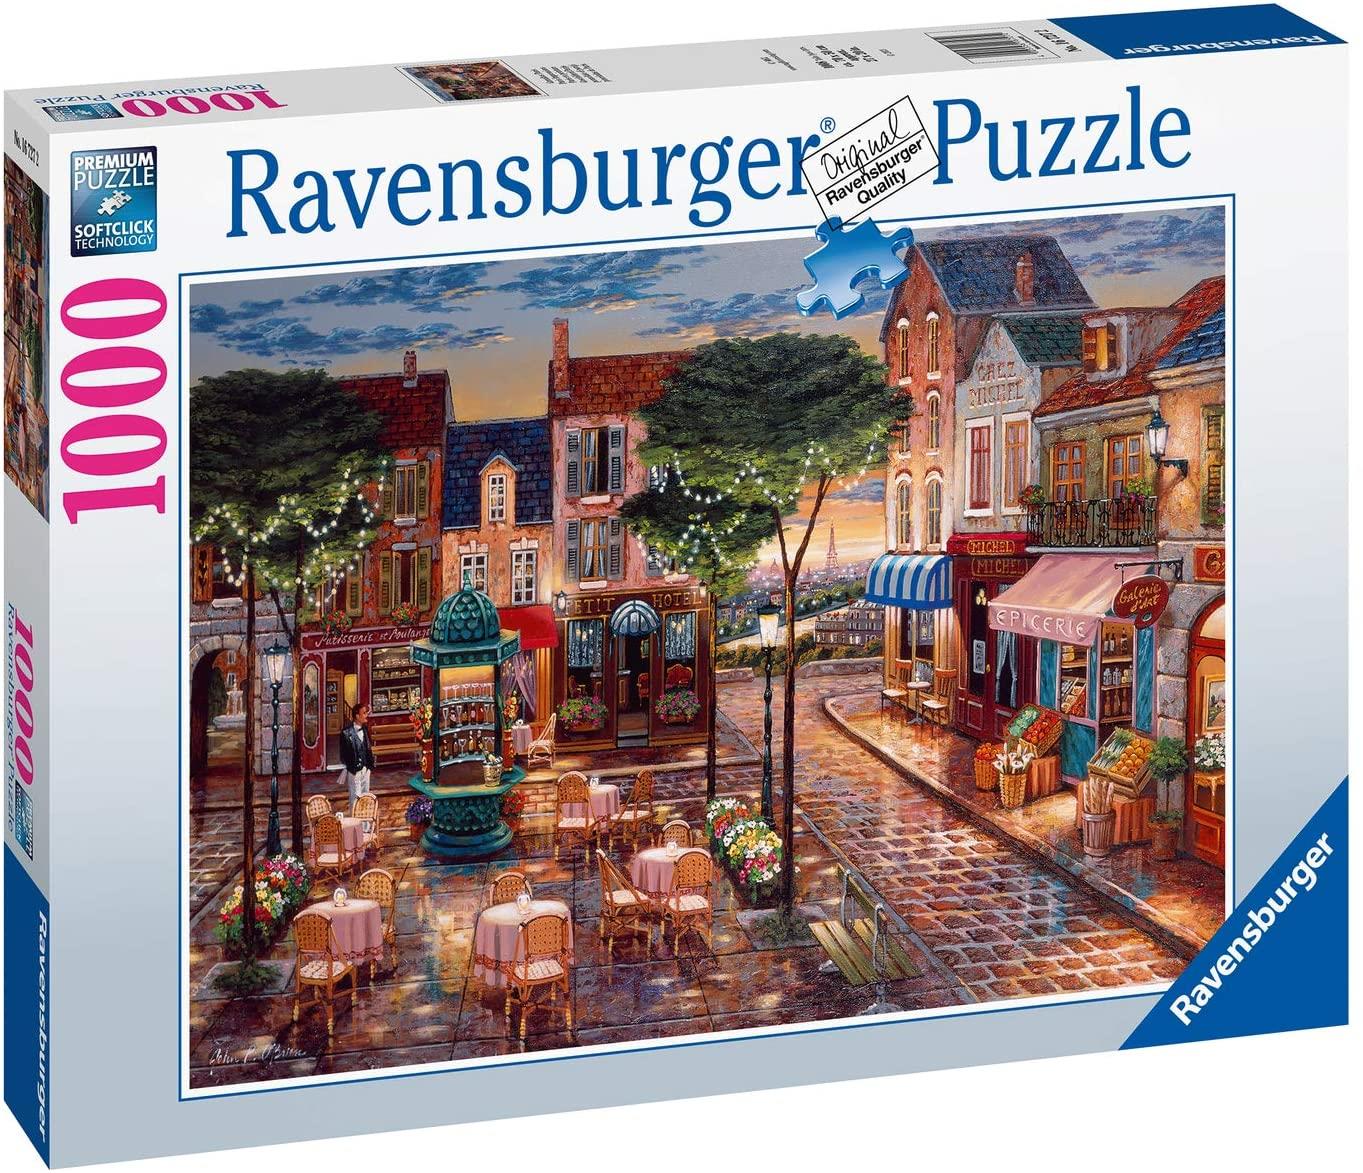 ravensburger puzzle review